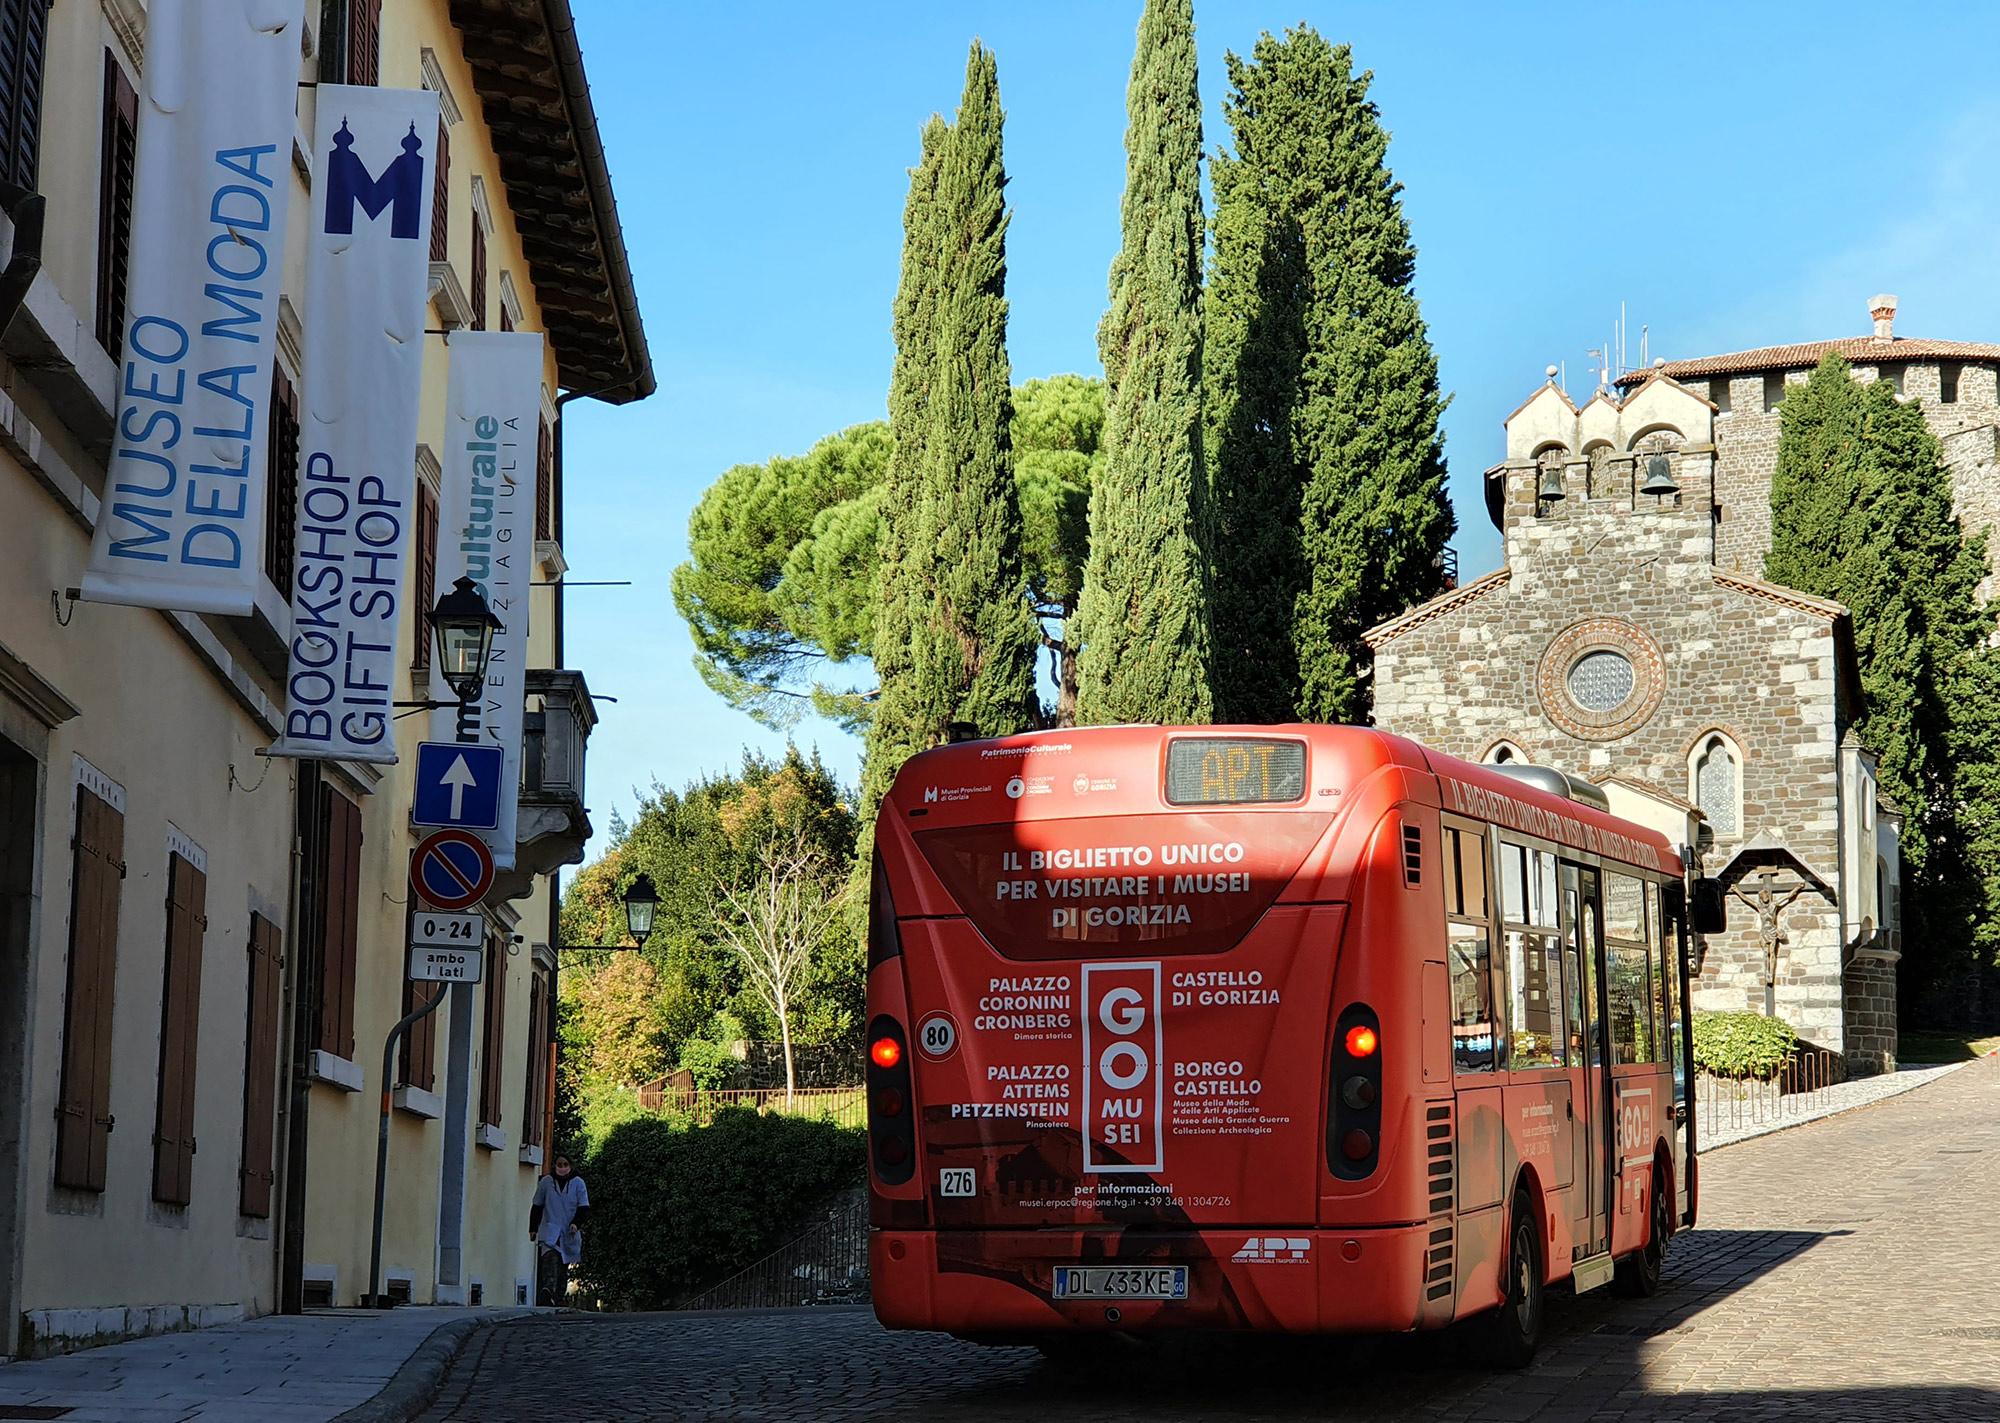 Bus GOMUSEI - Castello di Gorizia